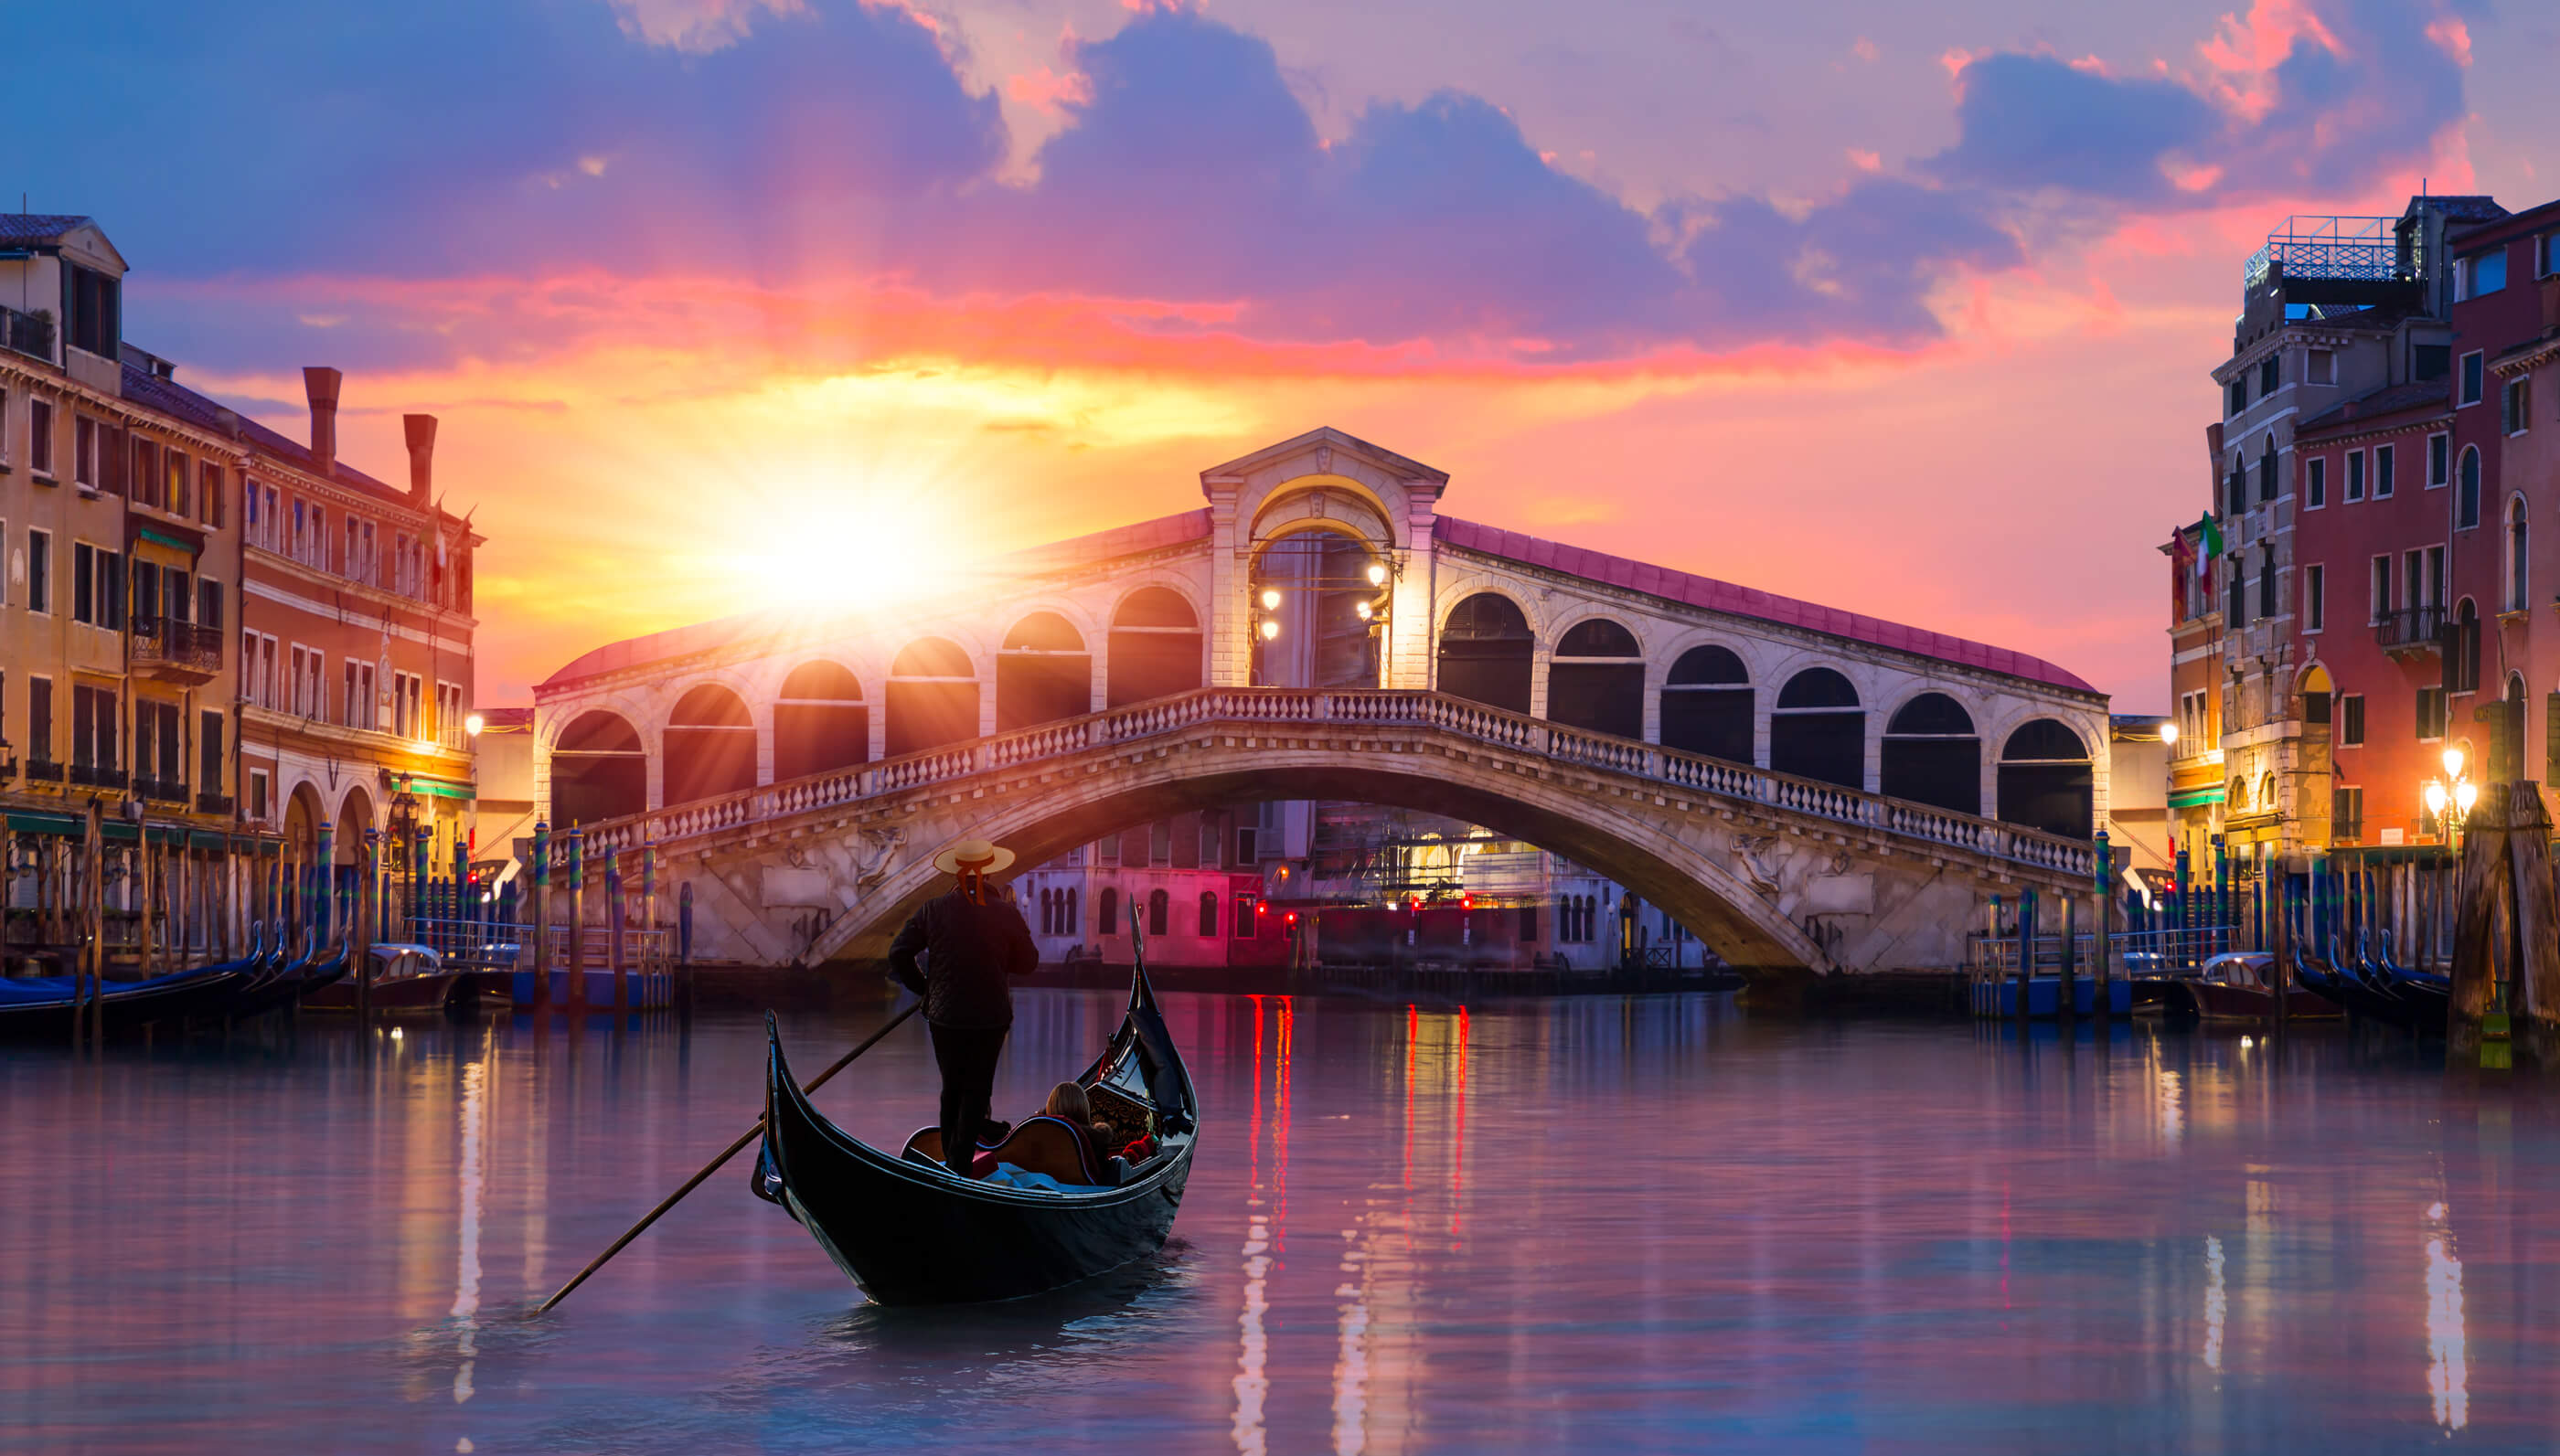 Удивительный город венеция. Мост Риальто Венеция. Венеция мост Риальто картина. Гранд канал Италия гондолы. Мост Риальто, Венеция, Италия.